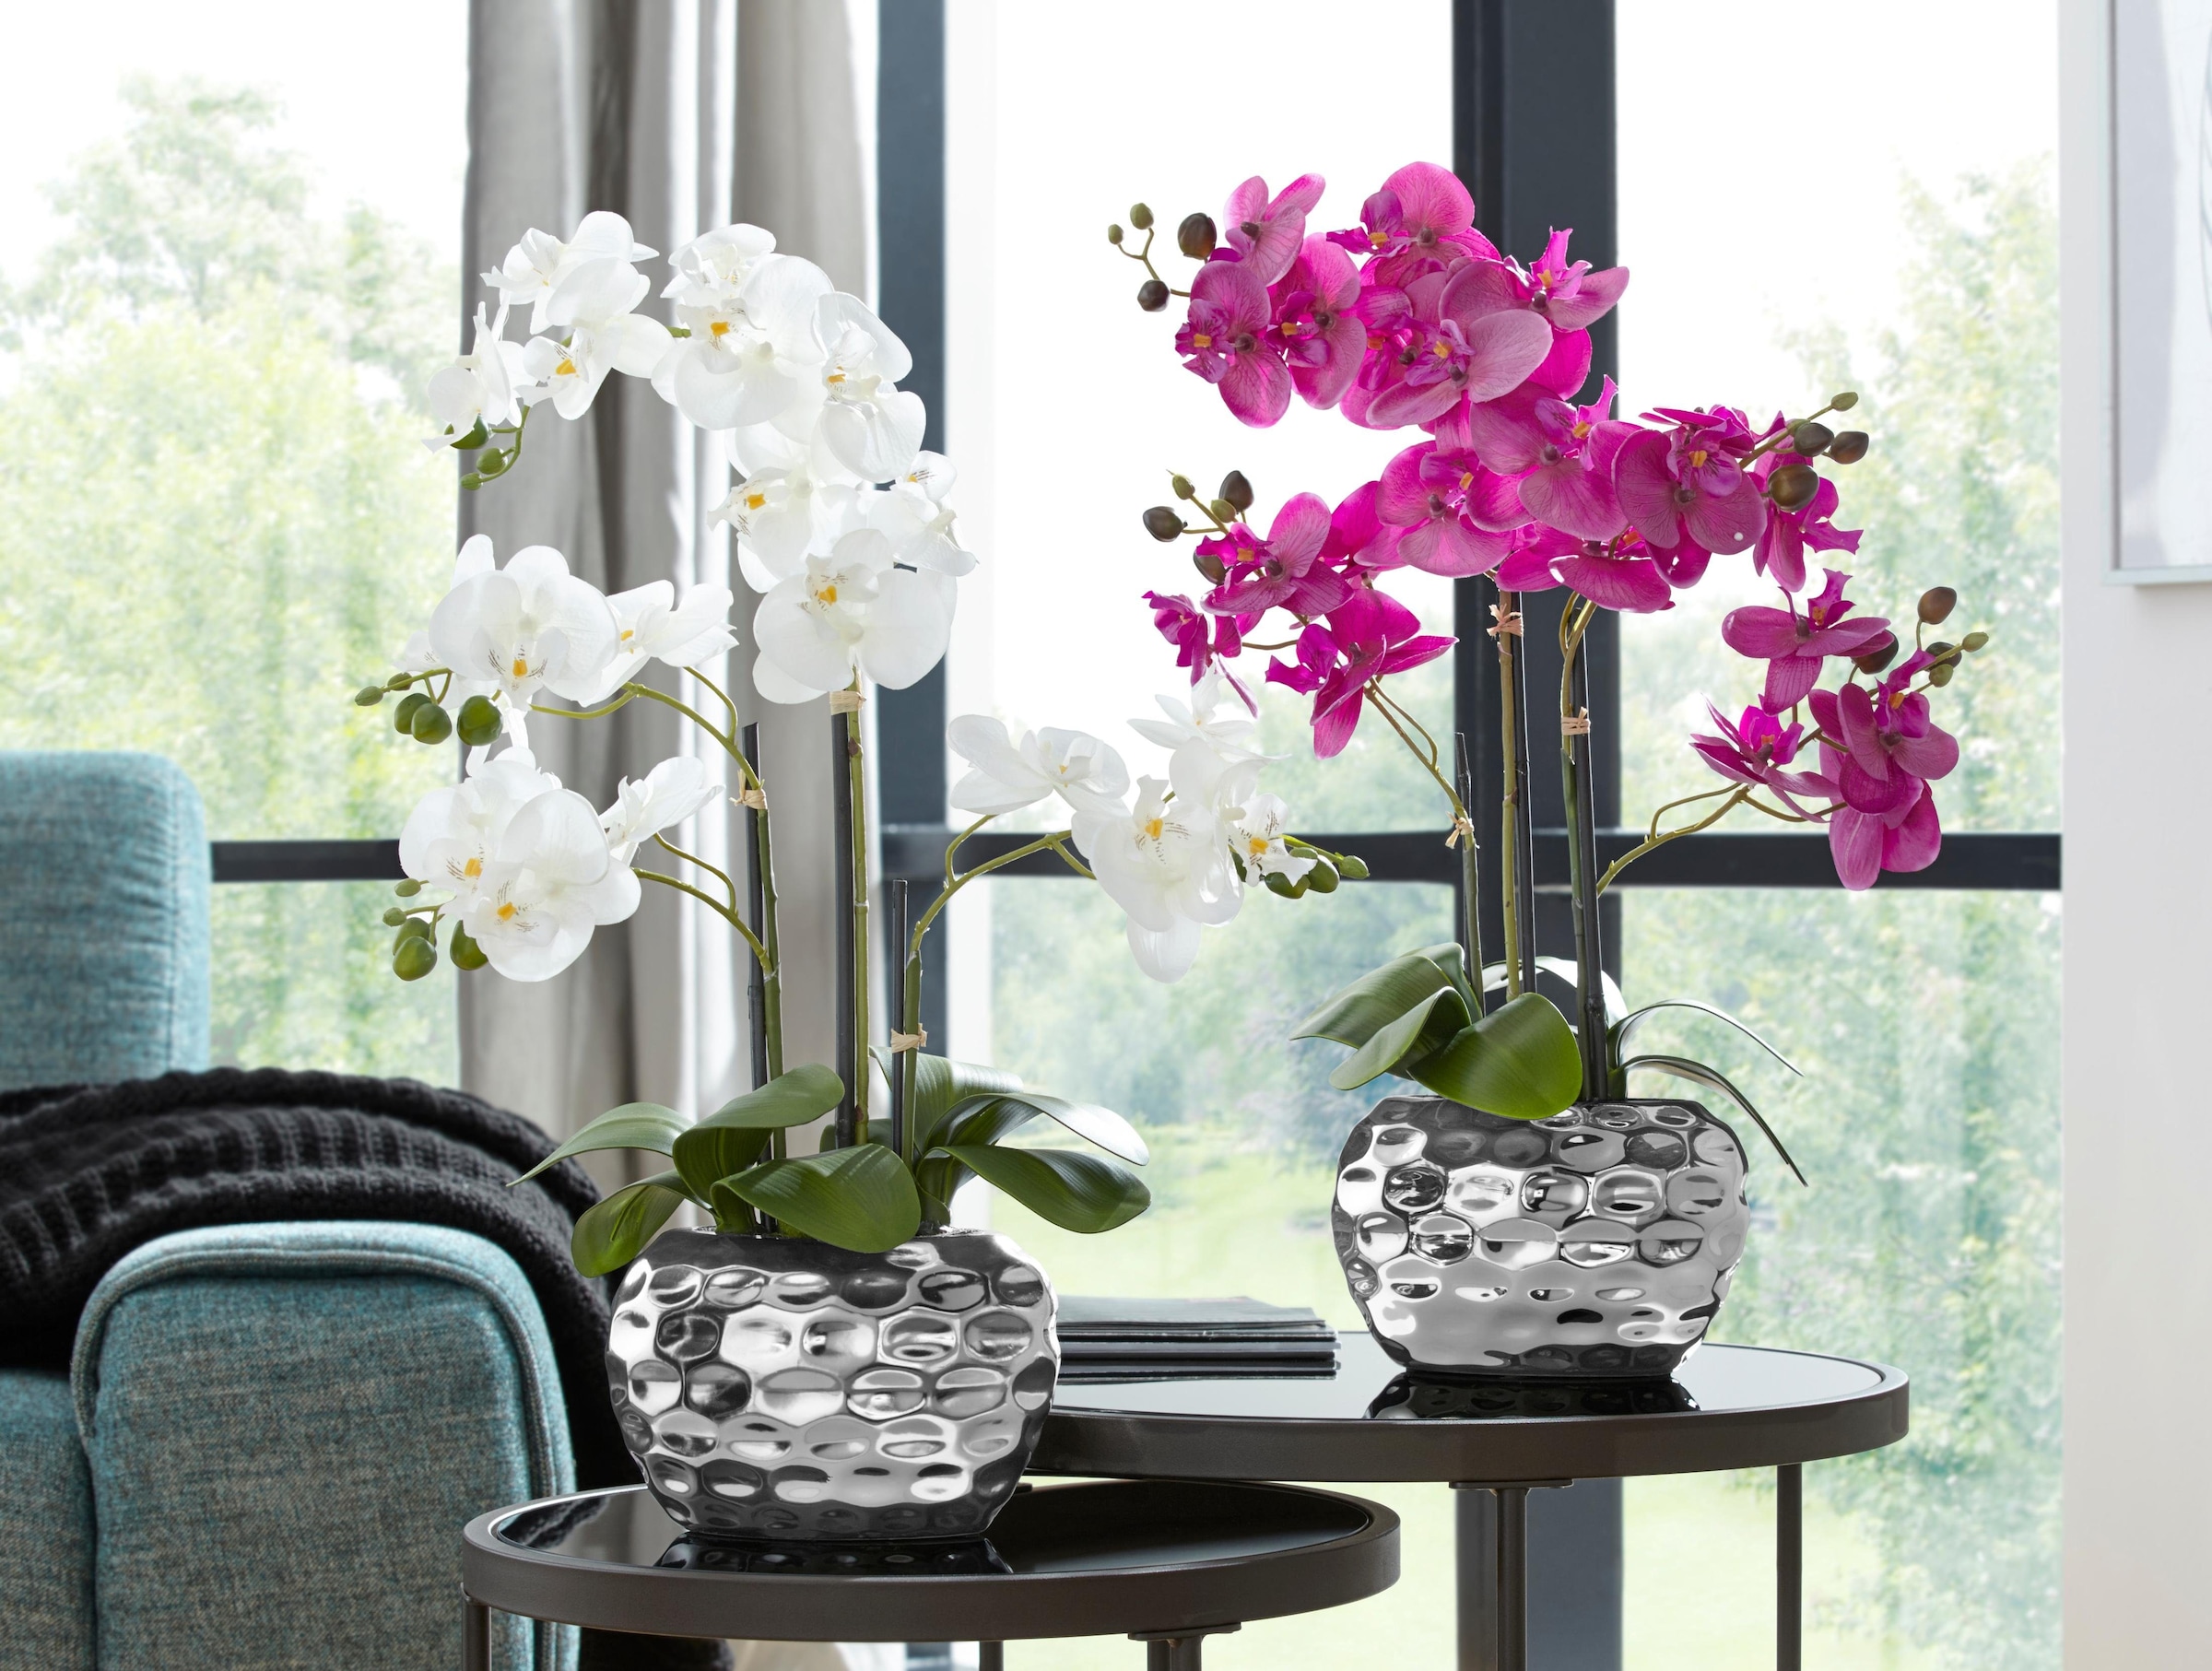 Creativ green Kunstpflanze »Orchidee« günstig kaufen